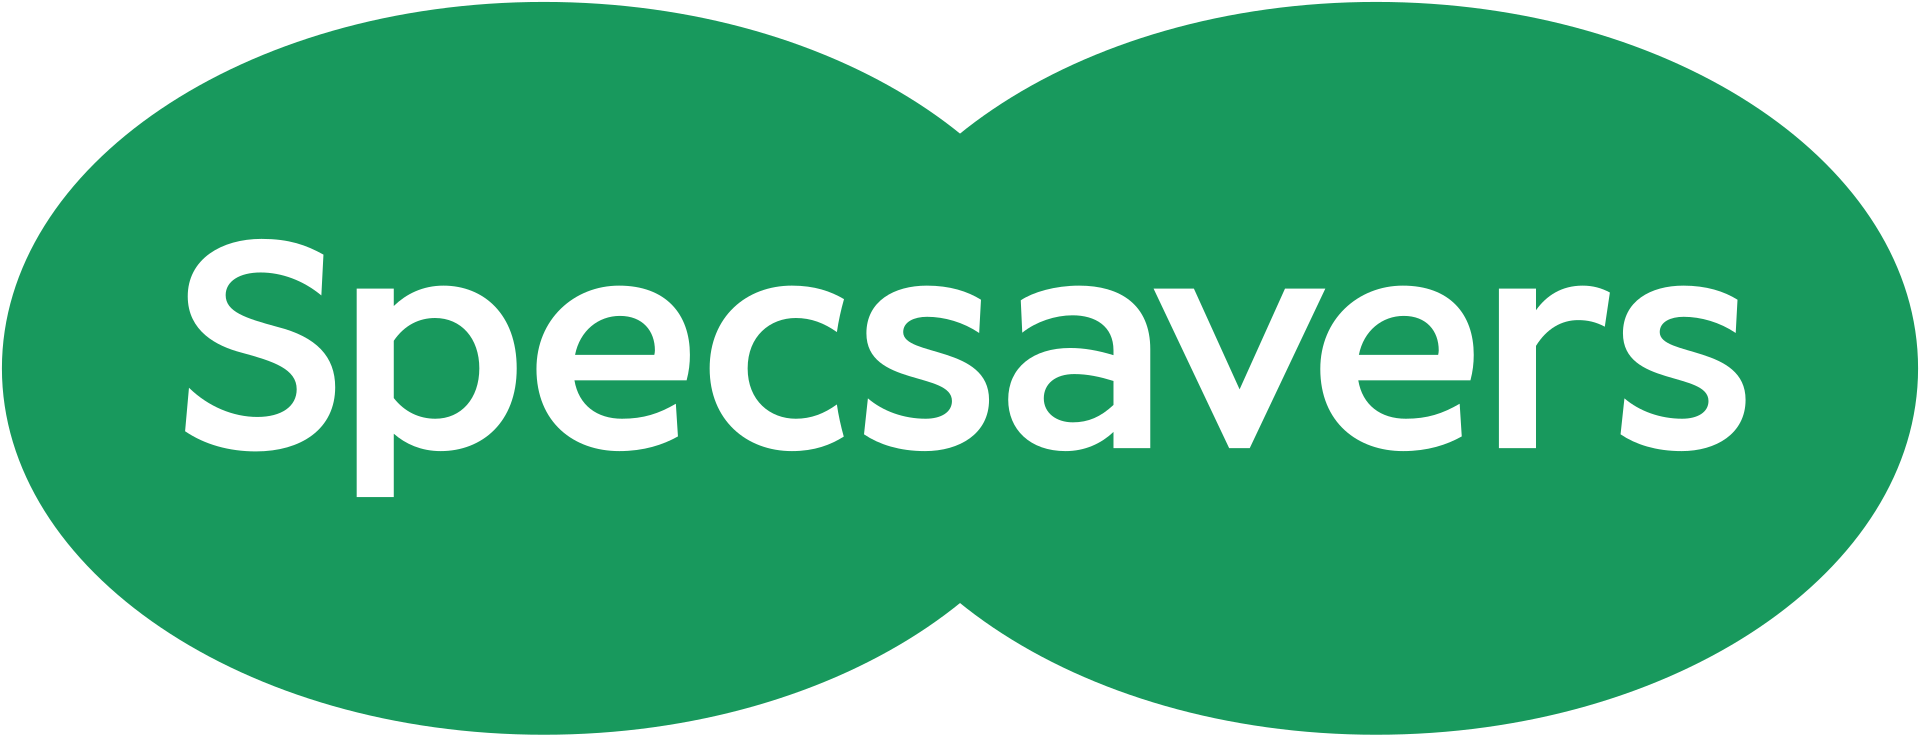 Specsavers_logo